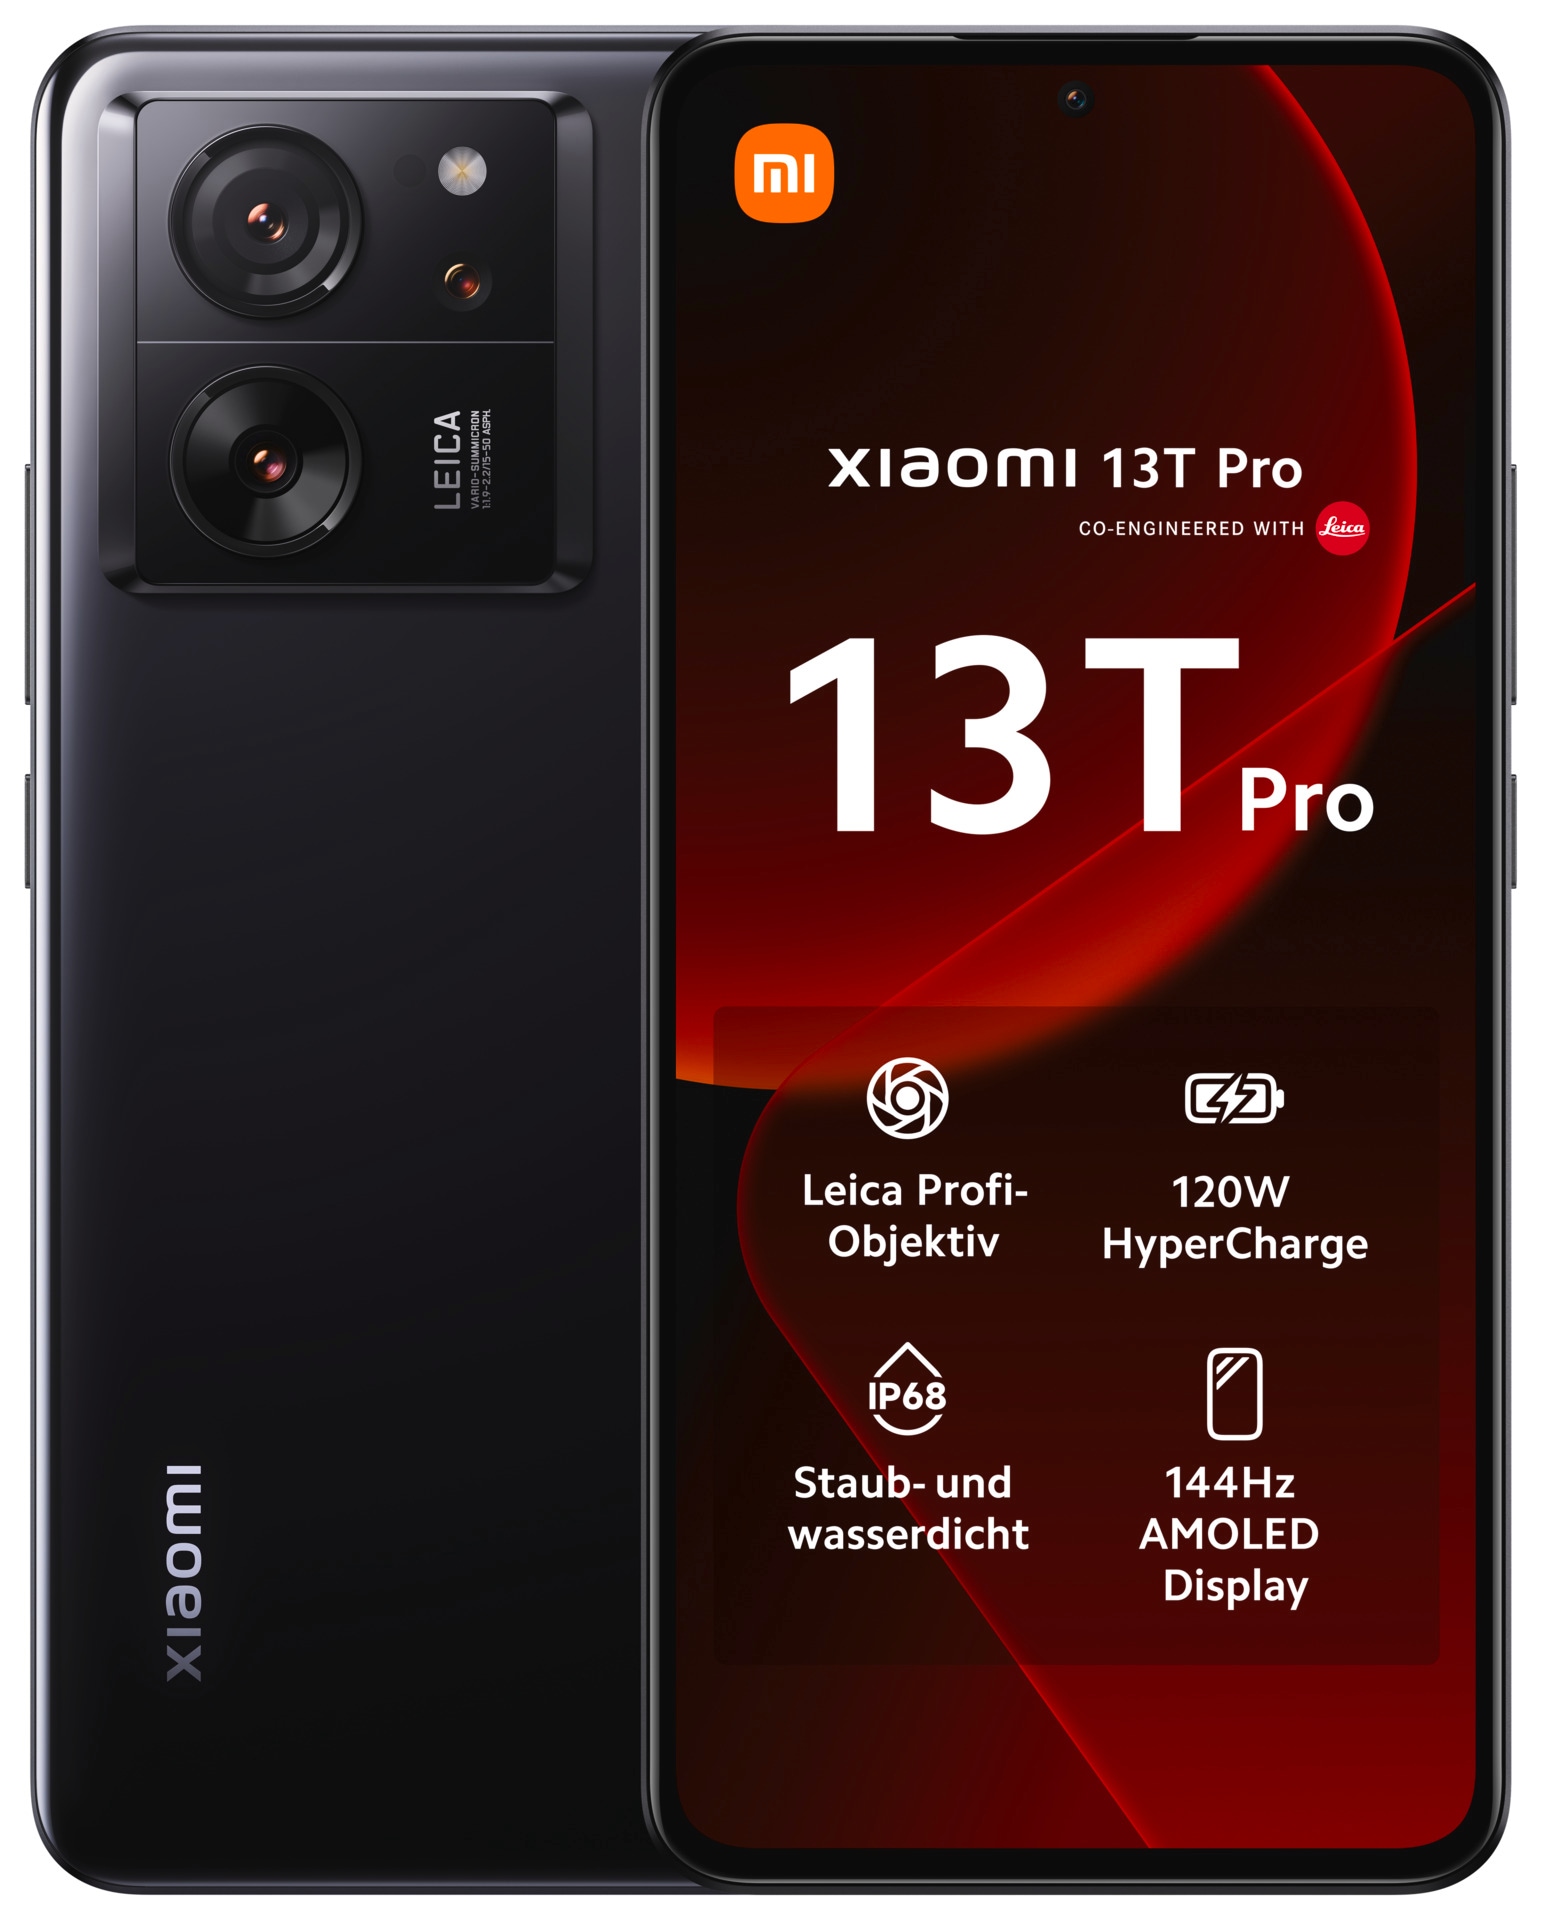 Smartphone »13T Pro mit 12GB RAM + 512GB internem Speicher«, Schwarz, 16,94 cm/6,67...